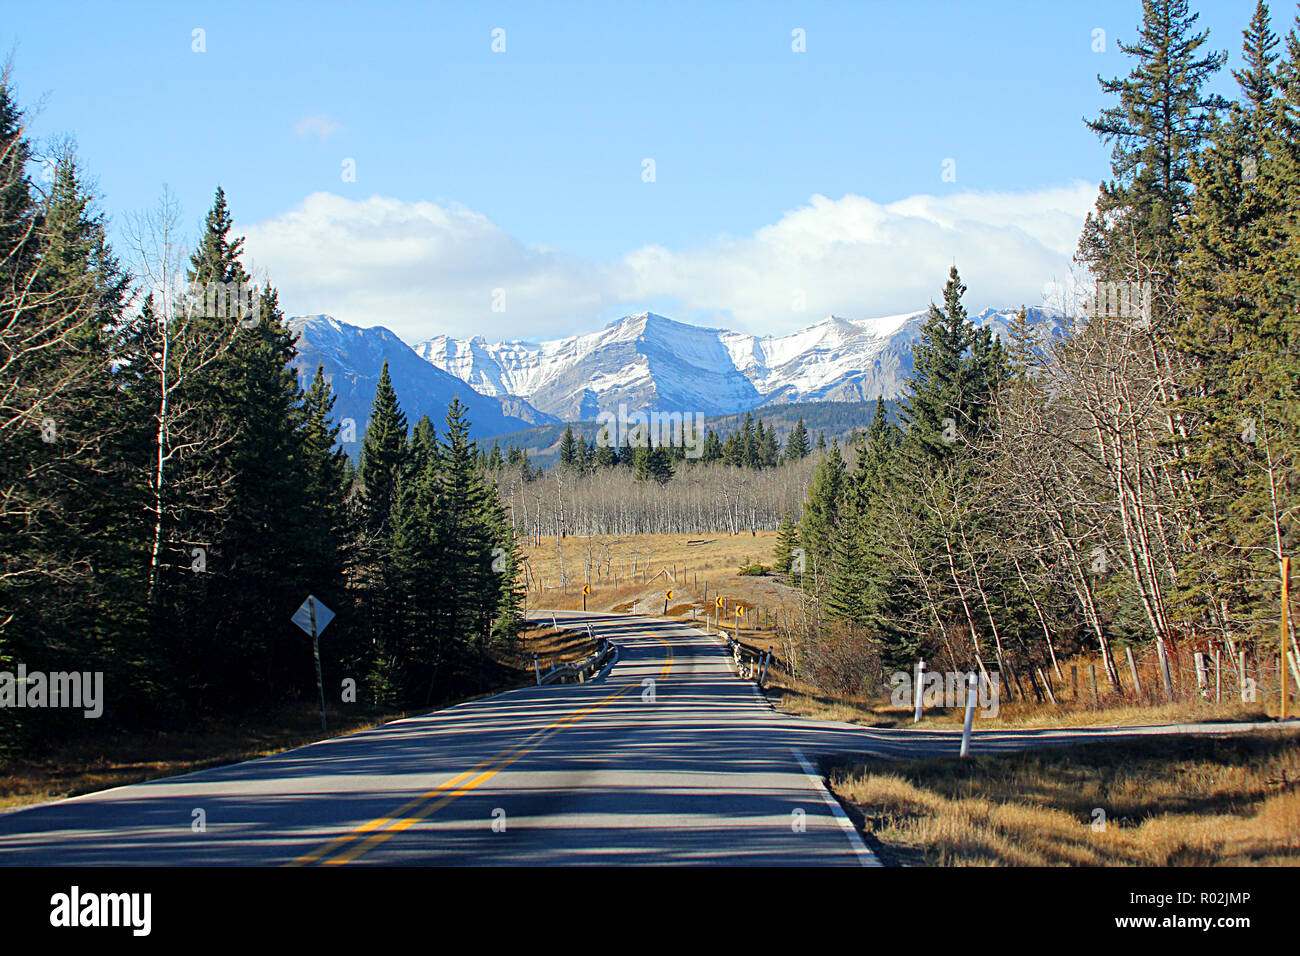 L'autoroute 93 dans le parc national Yoho, en Colombie-Britannique, Canada. Banque D'Images